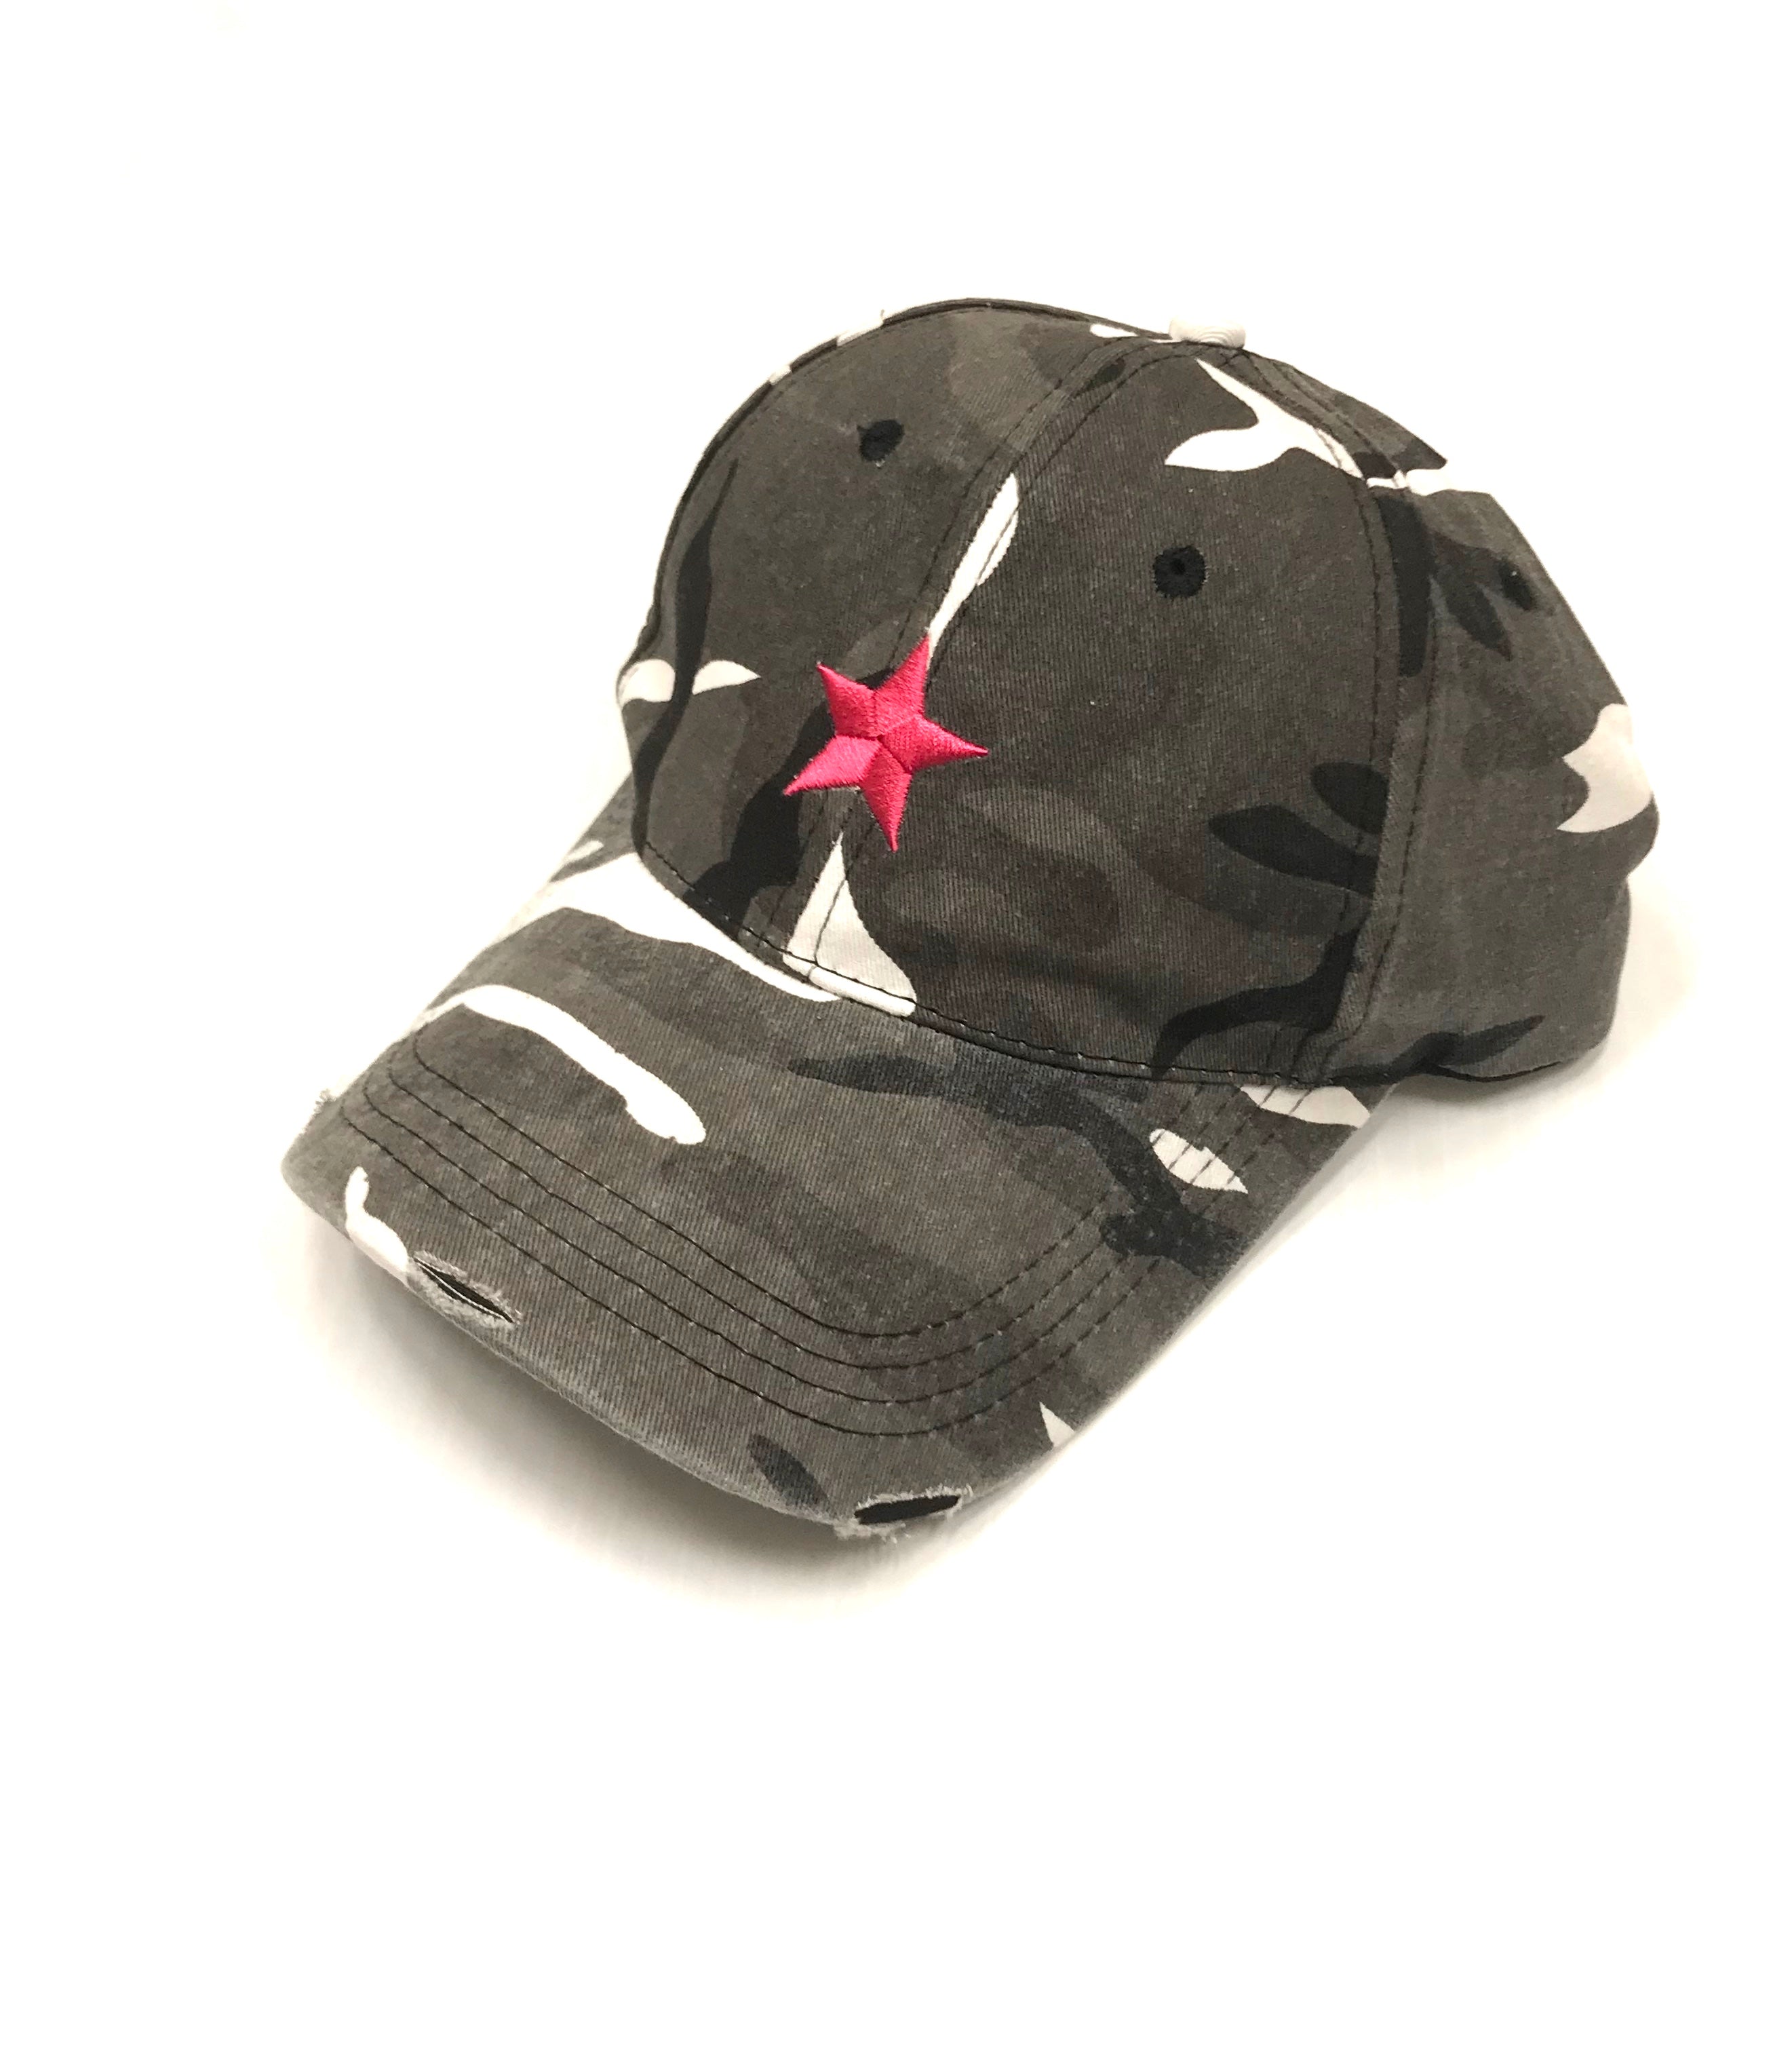 boardwalk baseball cap gray camo/pink star ships 8/15-9/1